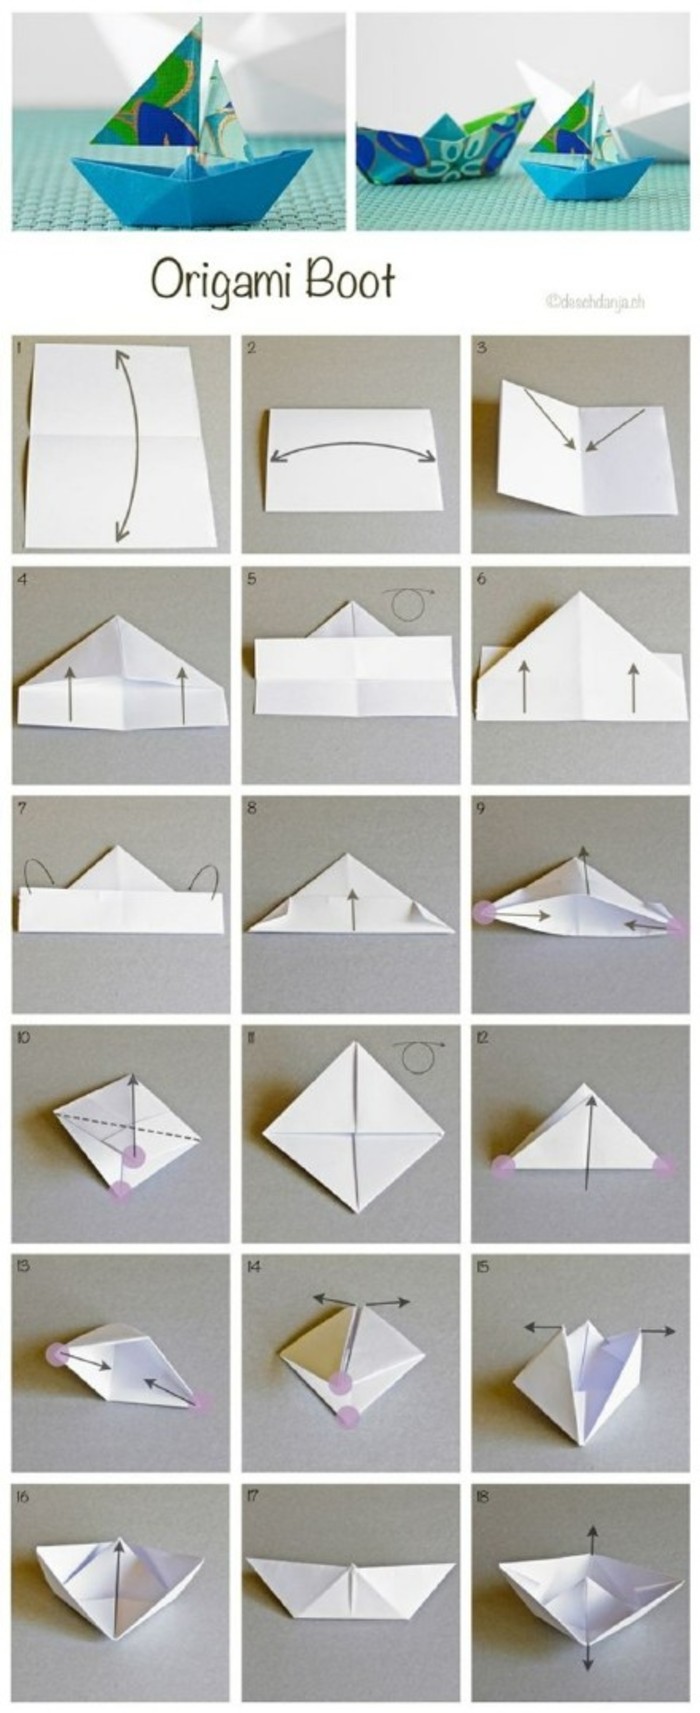 手工折纸大全 几种折纸船图解